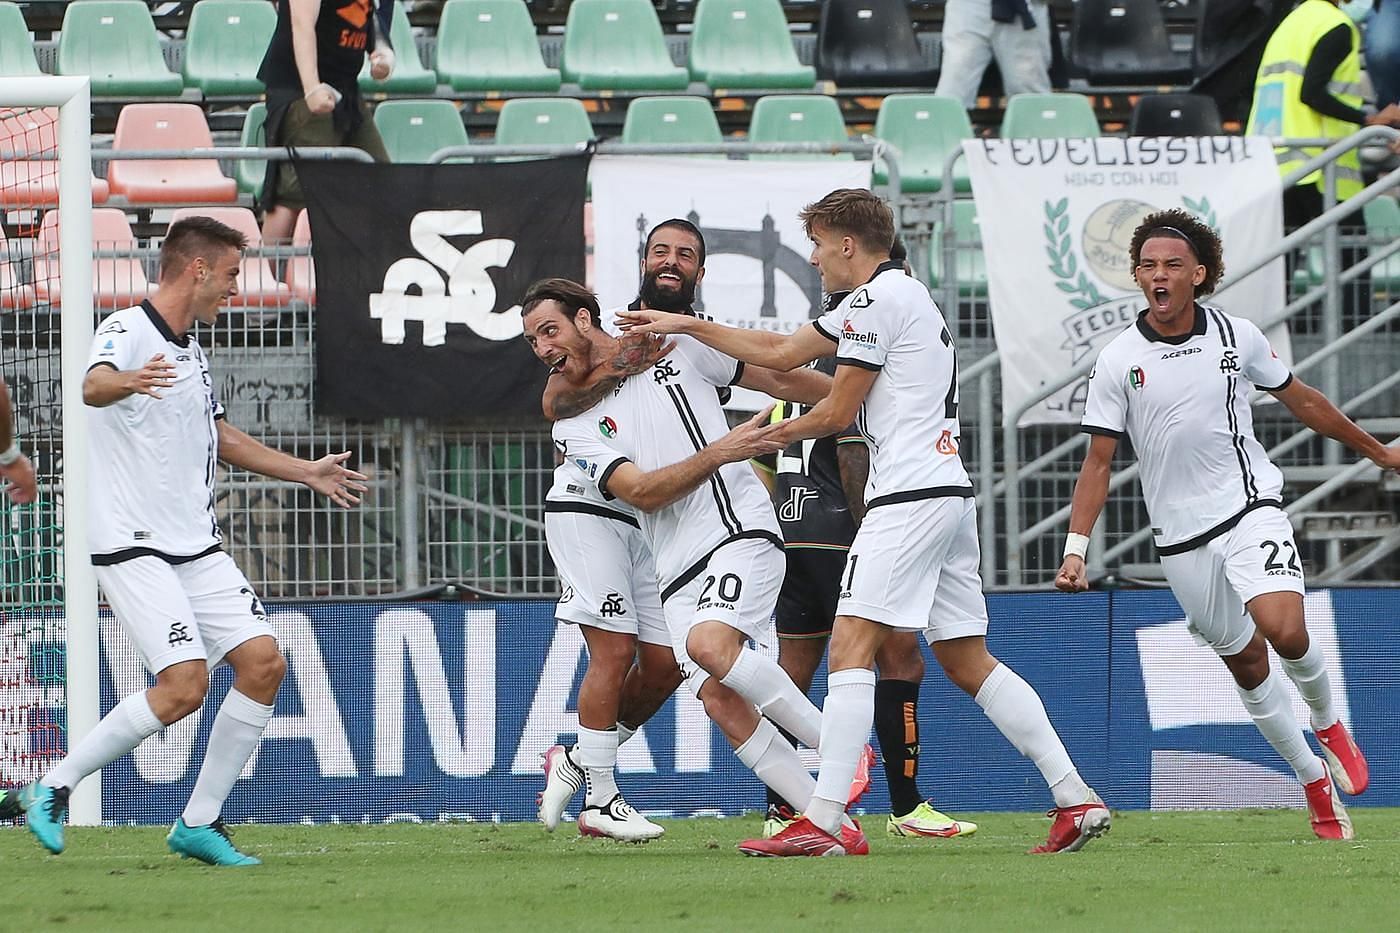 Spezia and Brescia square off in the Coppa Italia on Wednesday